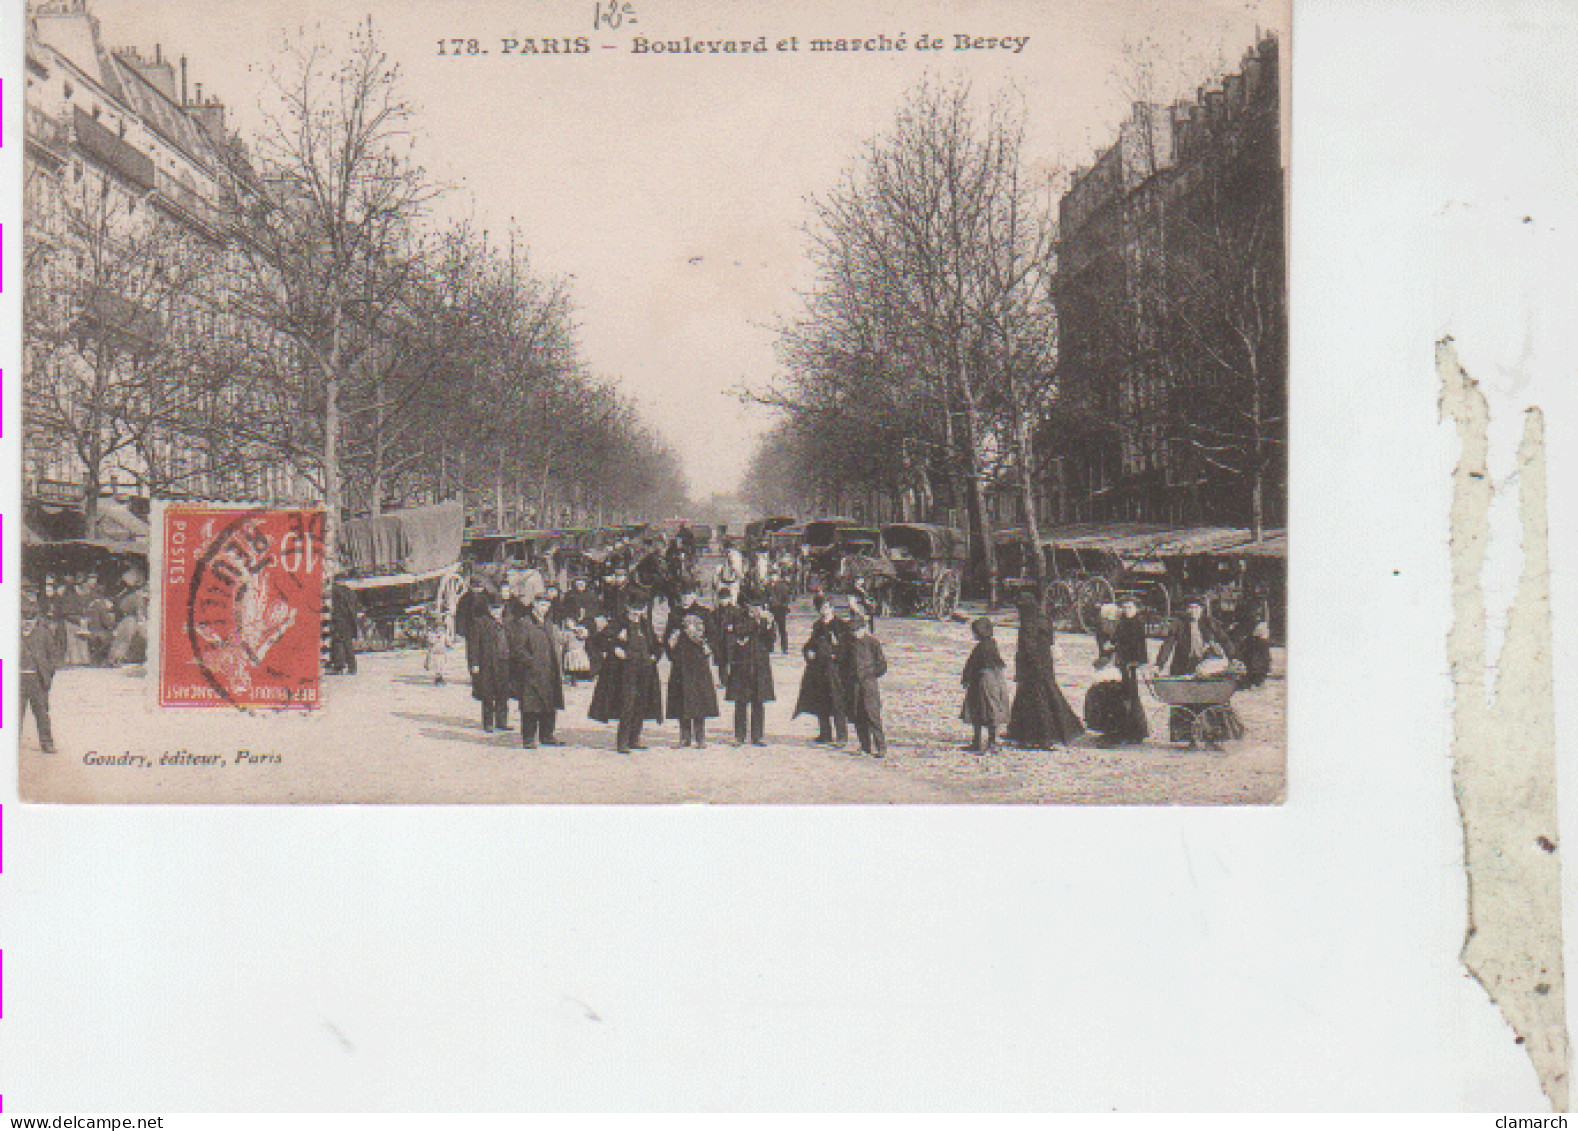 PARIS 12è-Boulevard Et Marché De Bercy - 178 - Arrondissement: 12